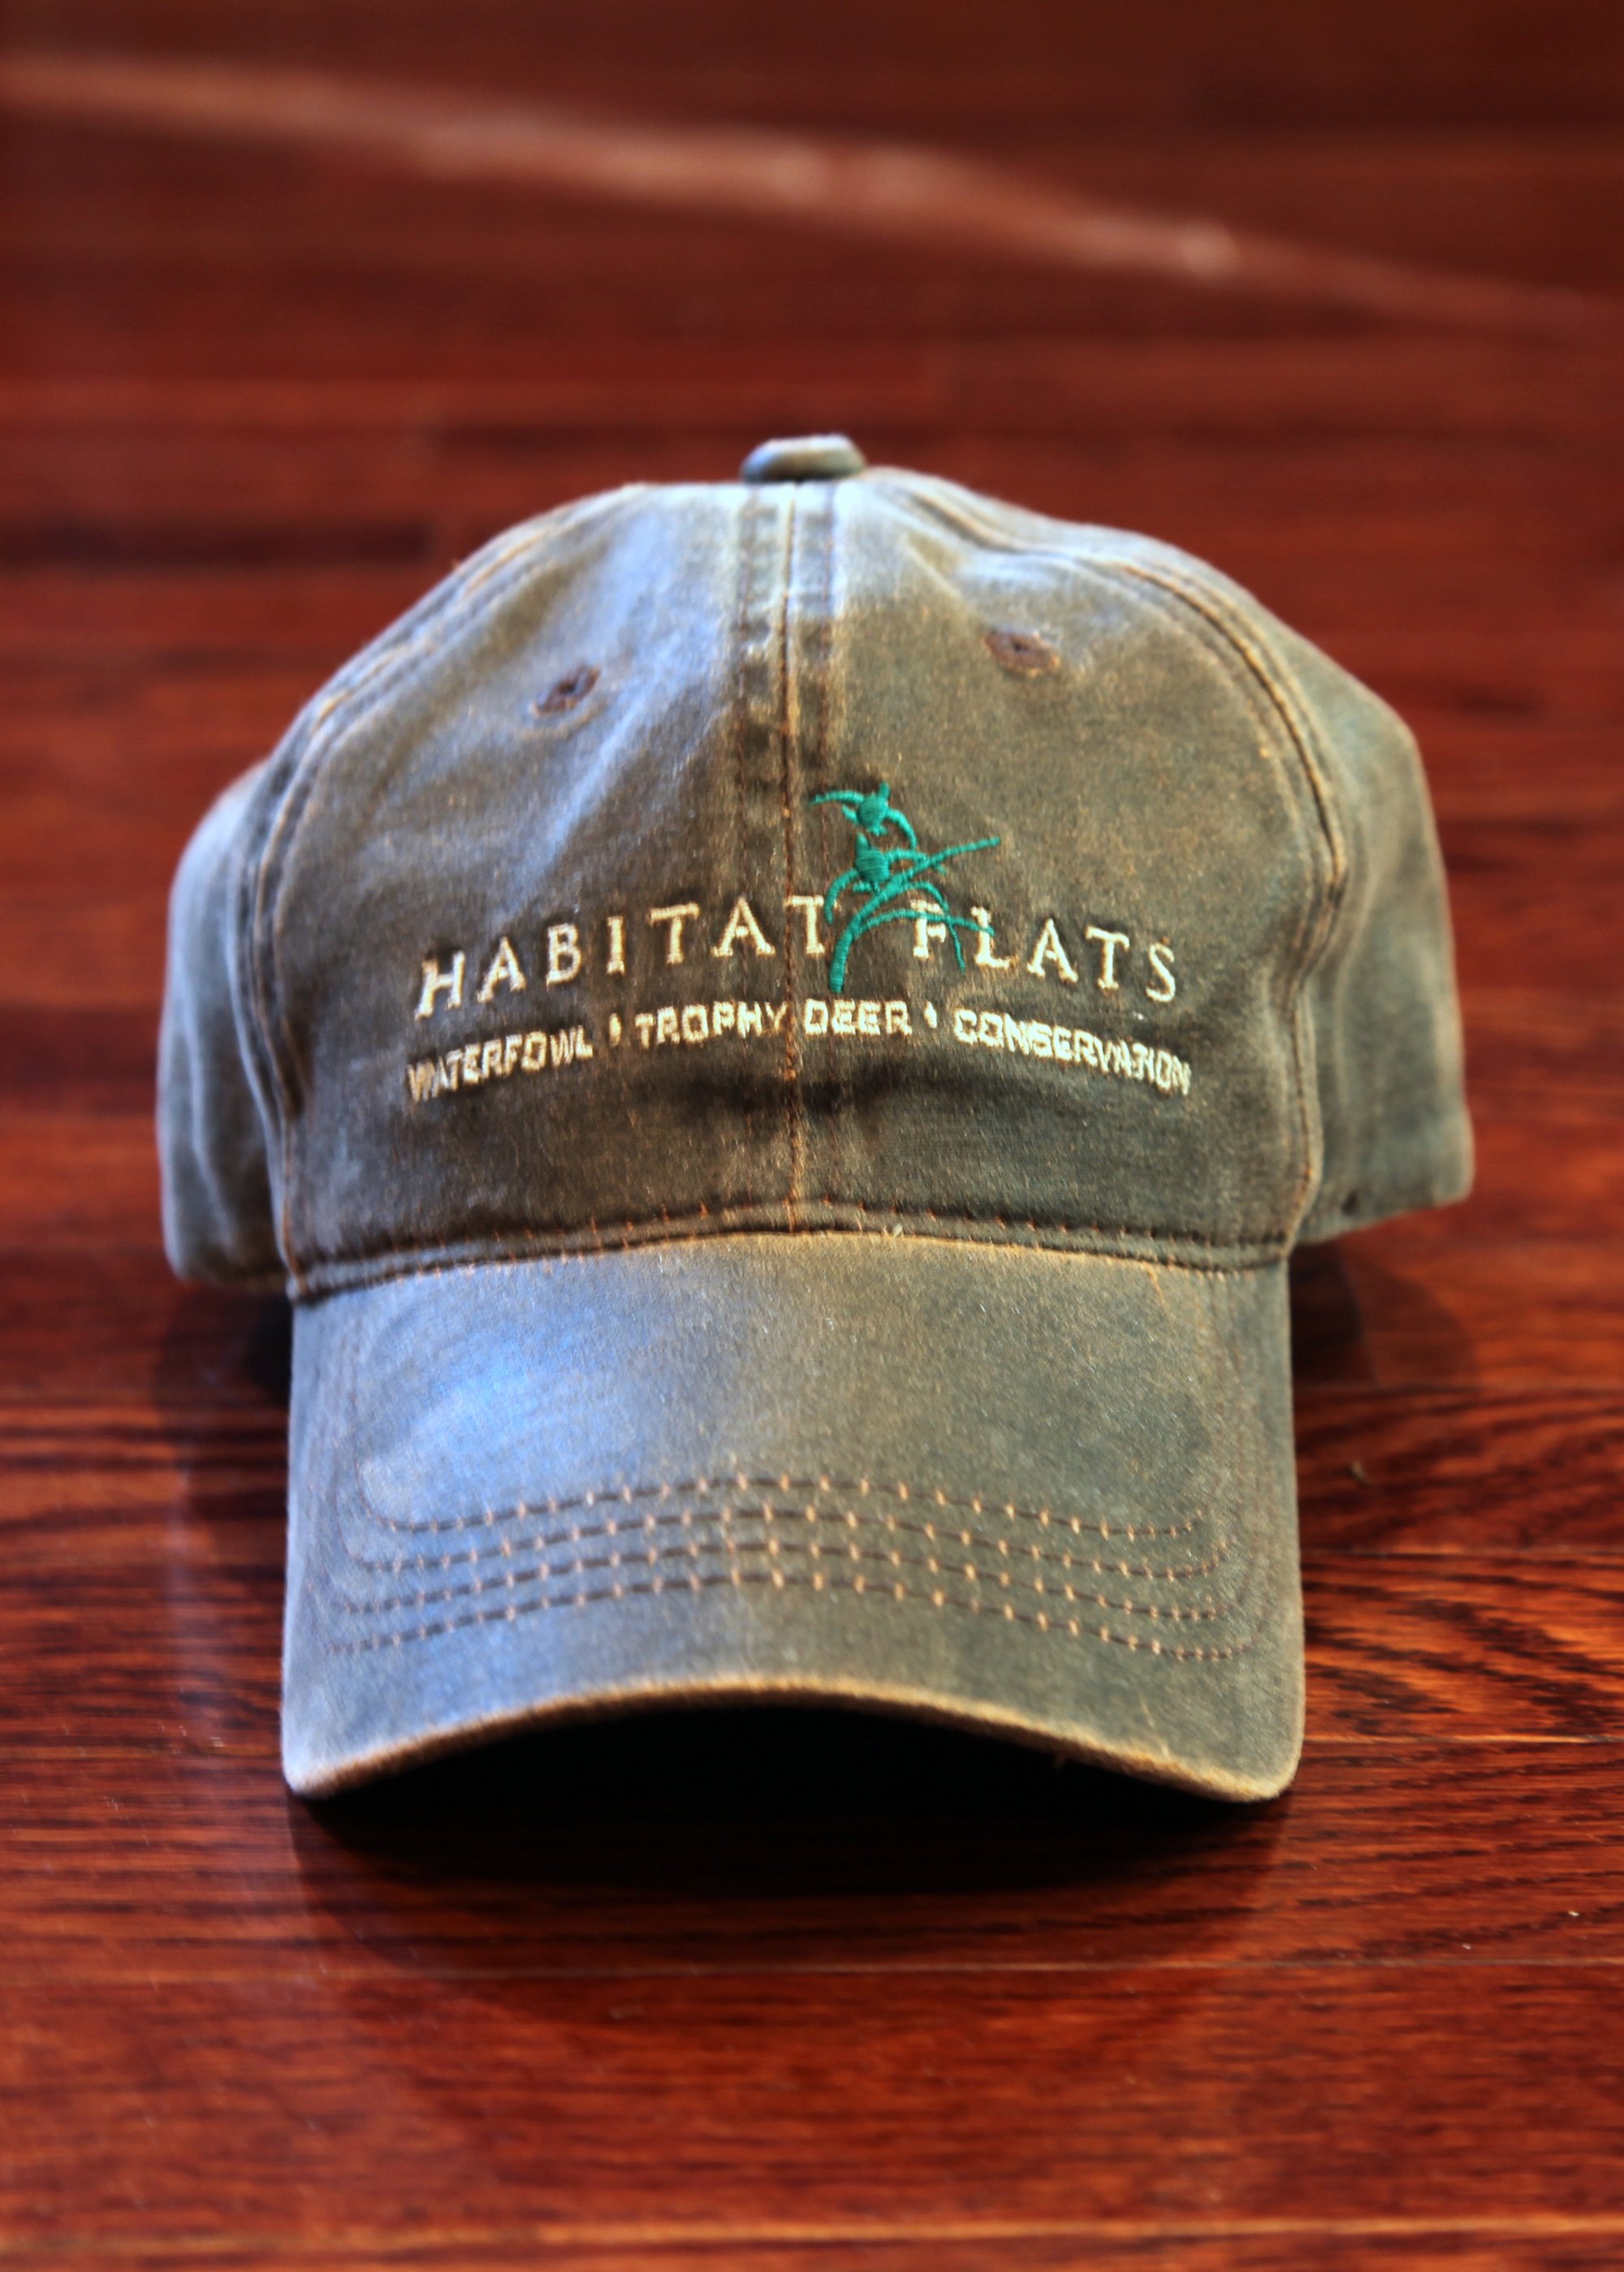 Habitat Flats Full Logo Waxed Canvas Hat | Habitat Flats Shop